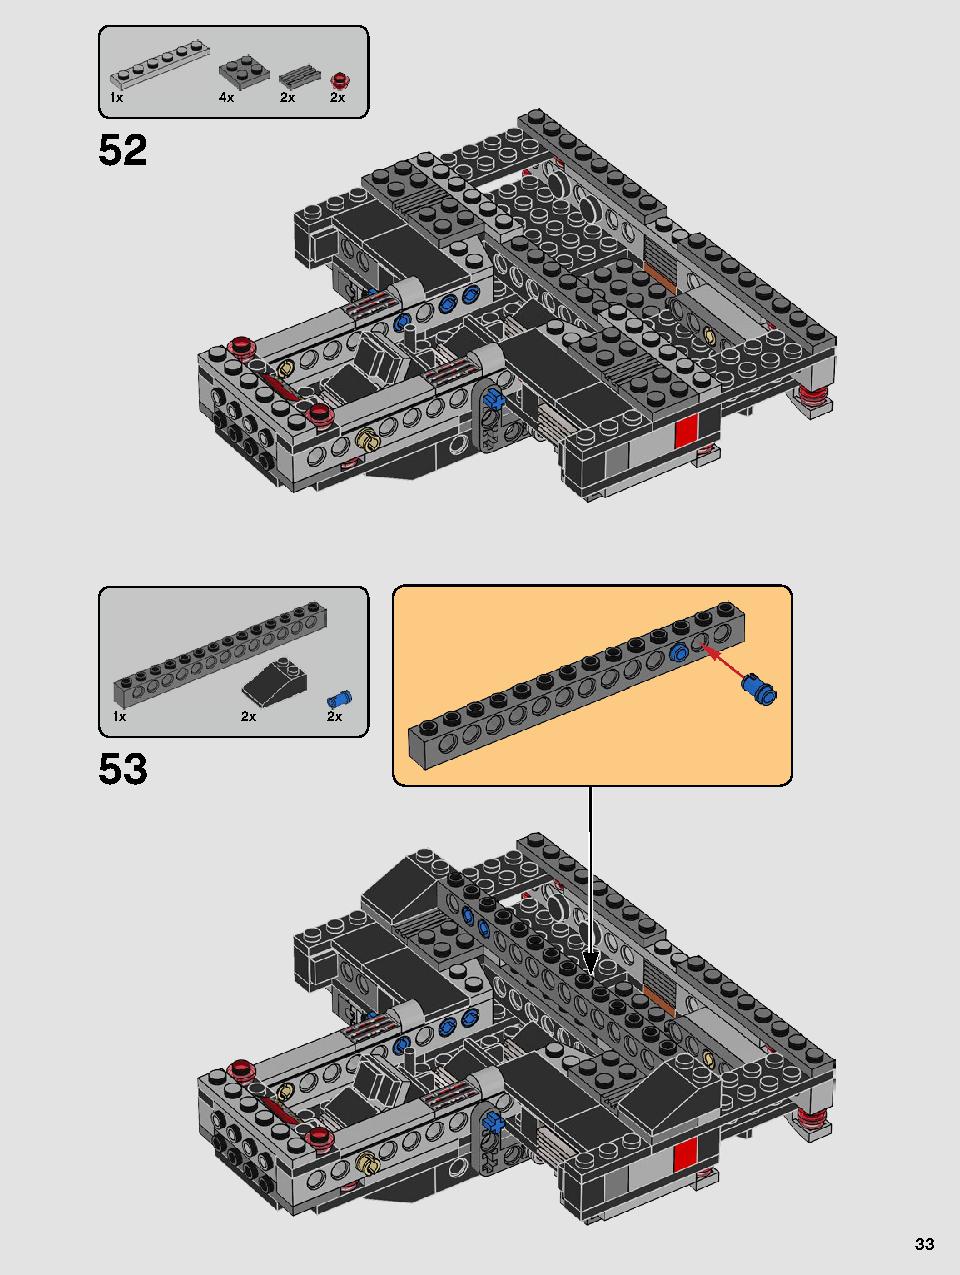 스타워즈 카일로 렌의 셔틀™ 75256 레고 세트 제품정보 레고 조립설명서 33 page